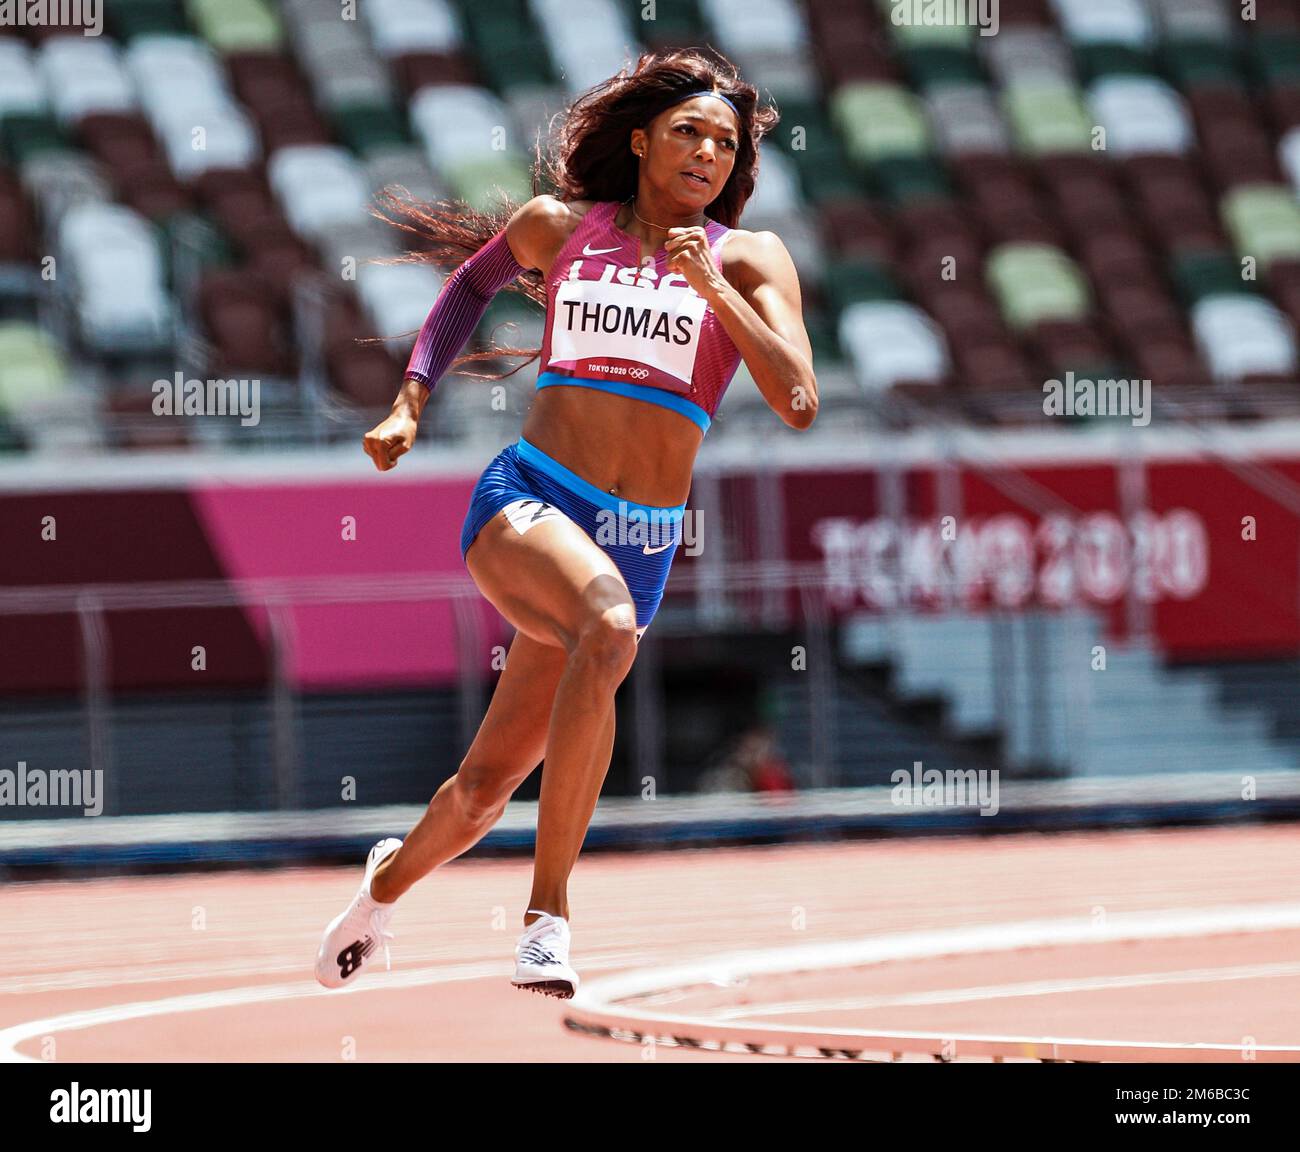 Gabrielle Thomas (Etats-Unis) en compétition dans les 200 mètres féminins aux Jeux Olympiques d'été 2020 (2021), Tokyo, Japon Banque D'Images